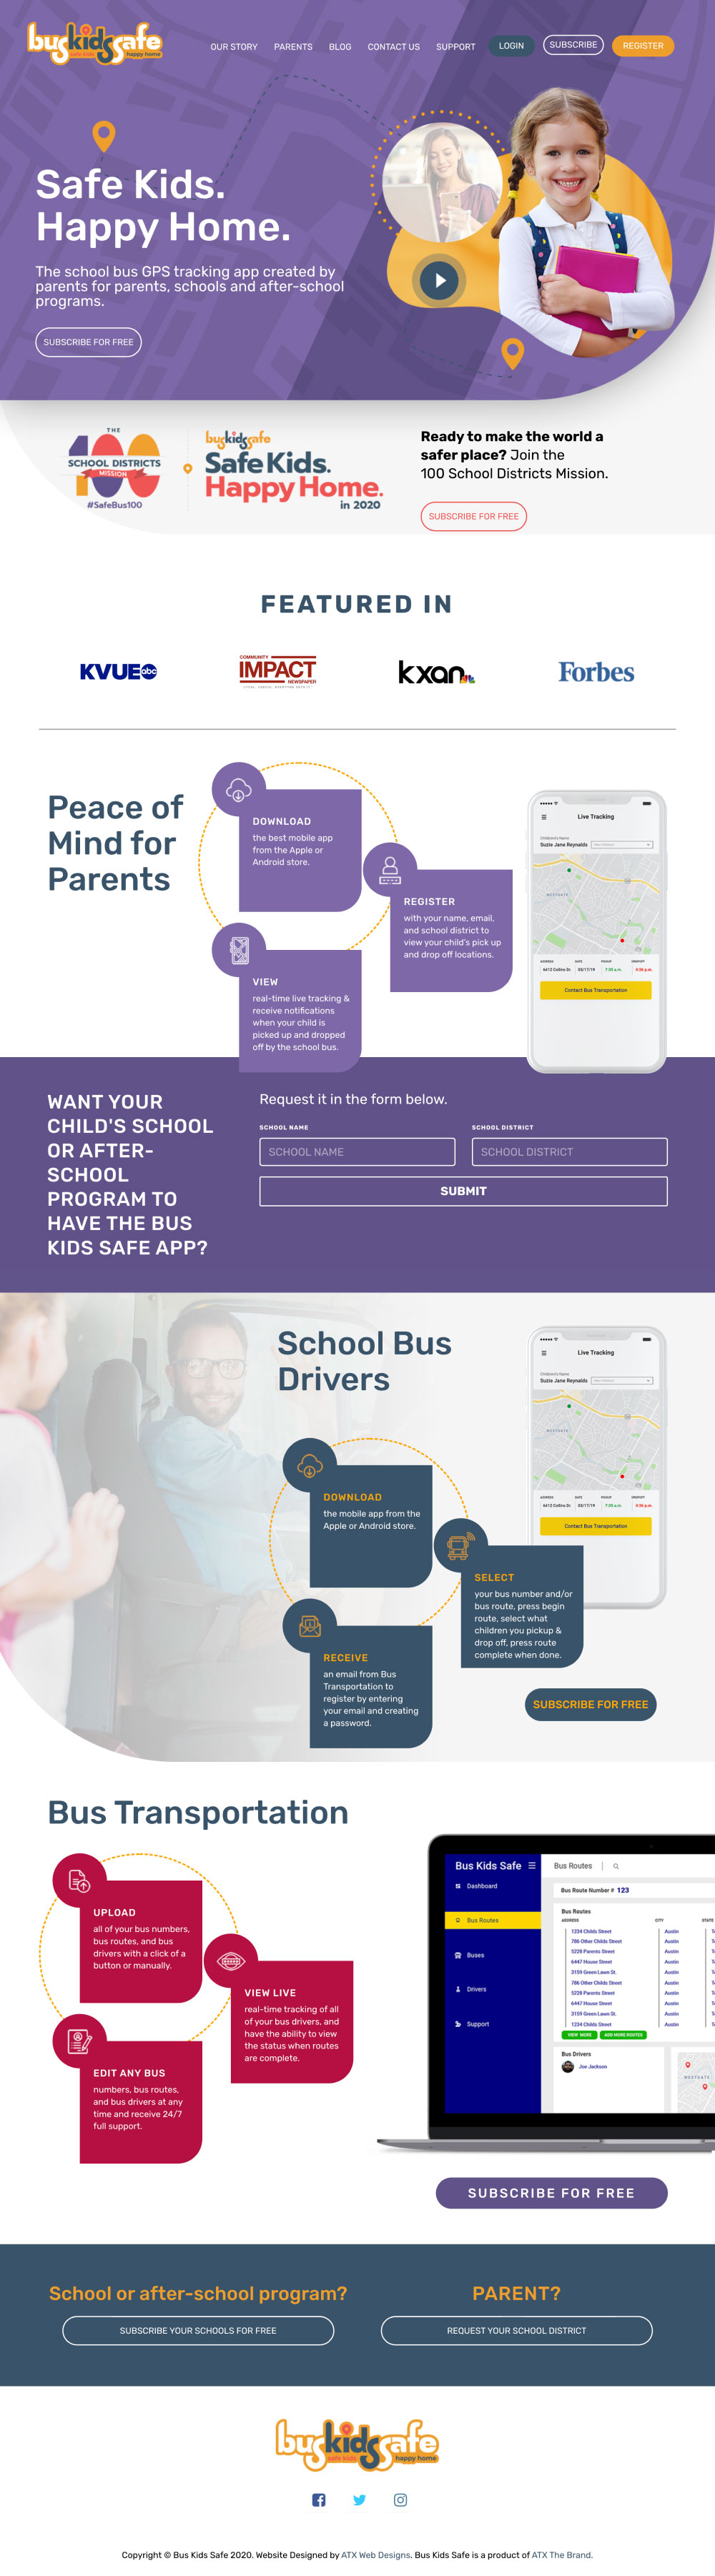 bus-kids-website-mockup-image